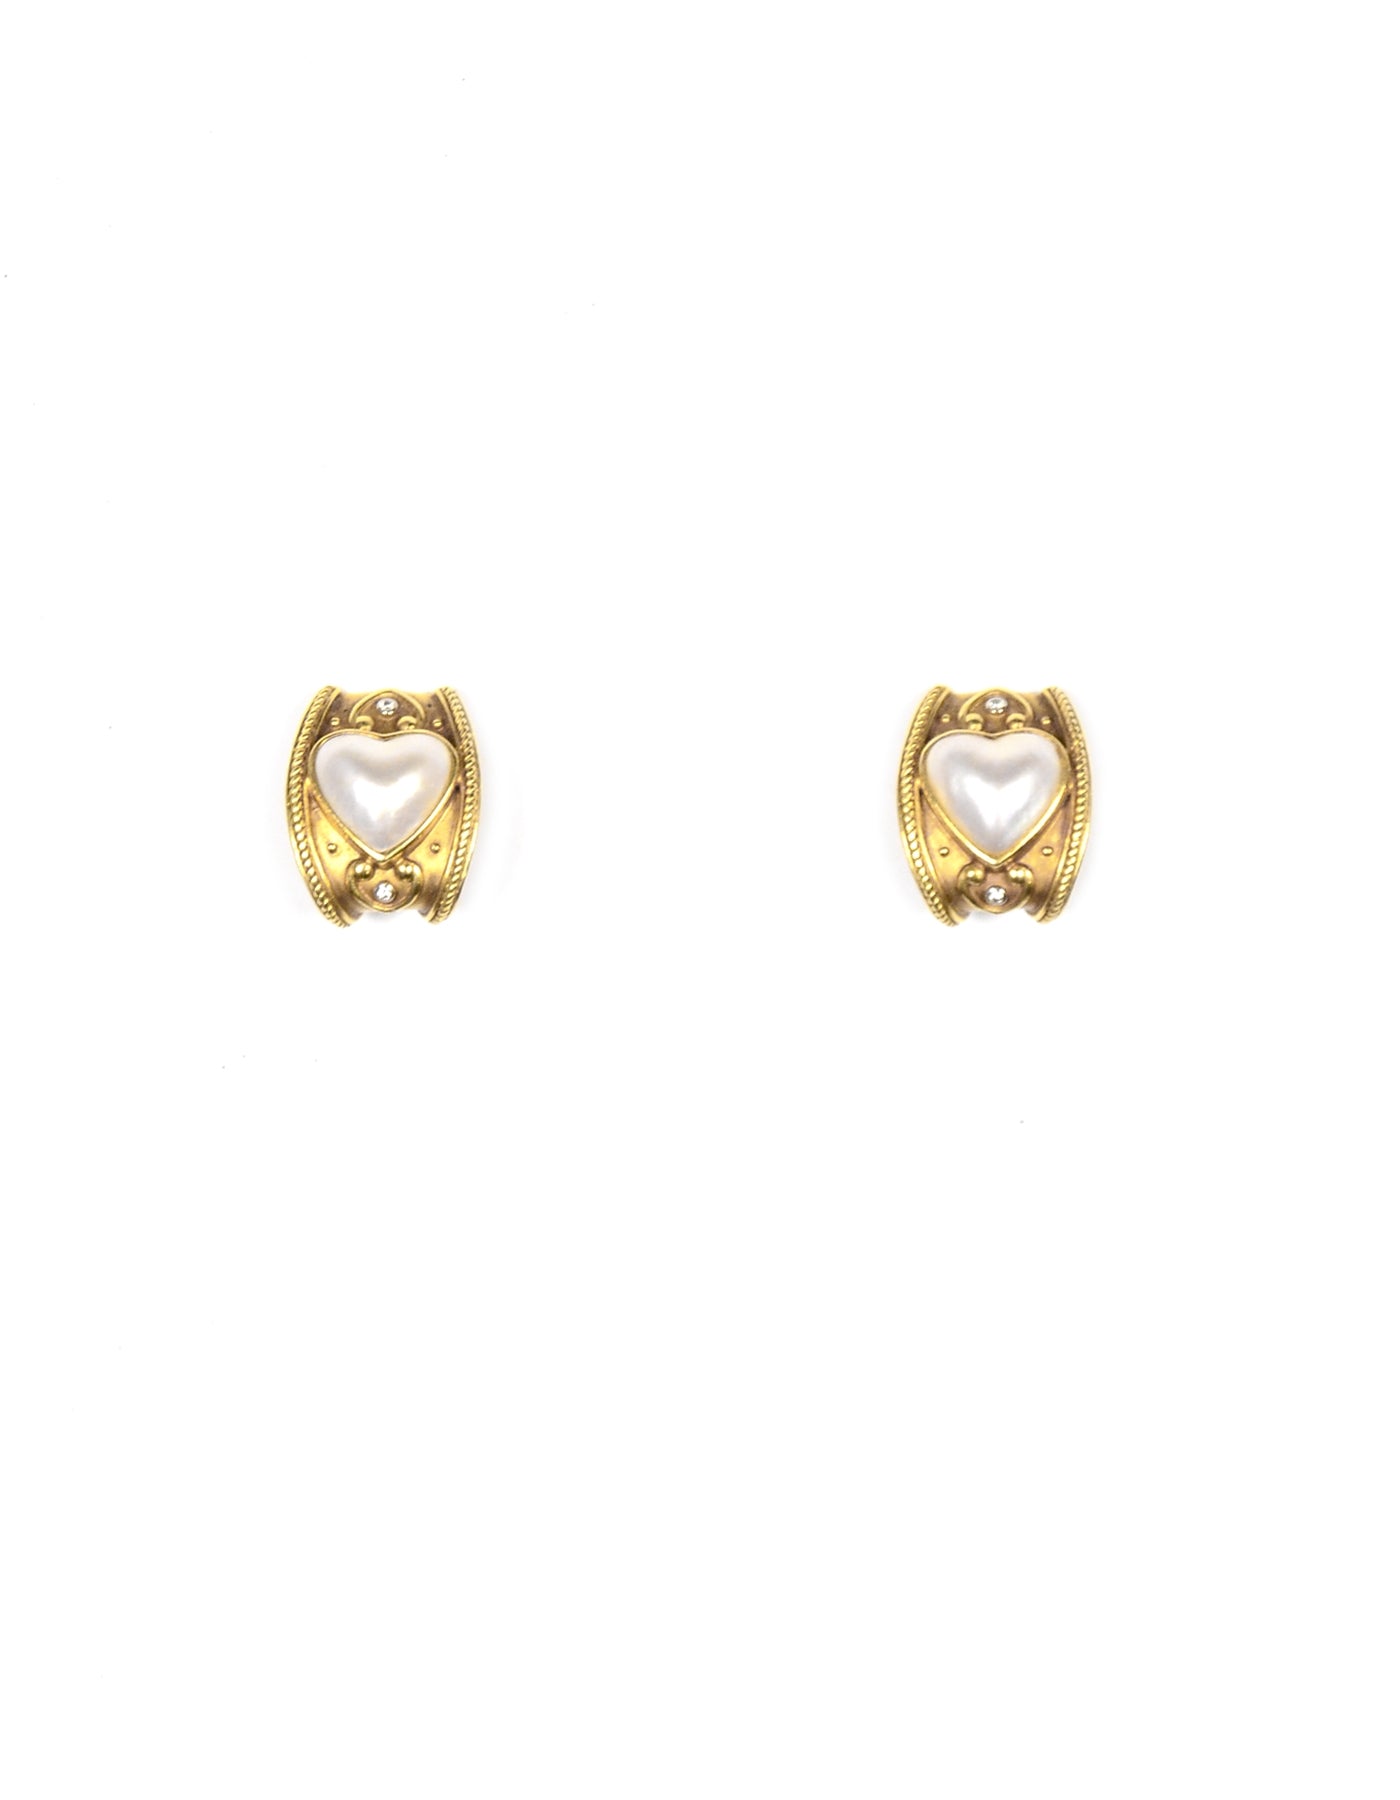 Vintage 18K Gold Clip On Earrings W/ Diamond & Pearl Heart